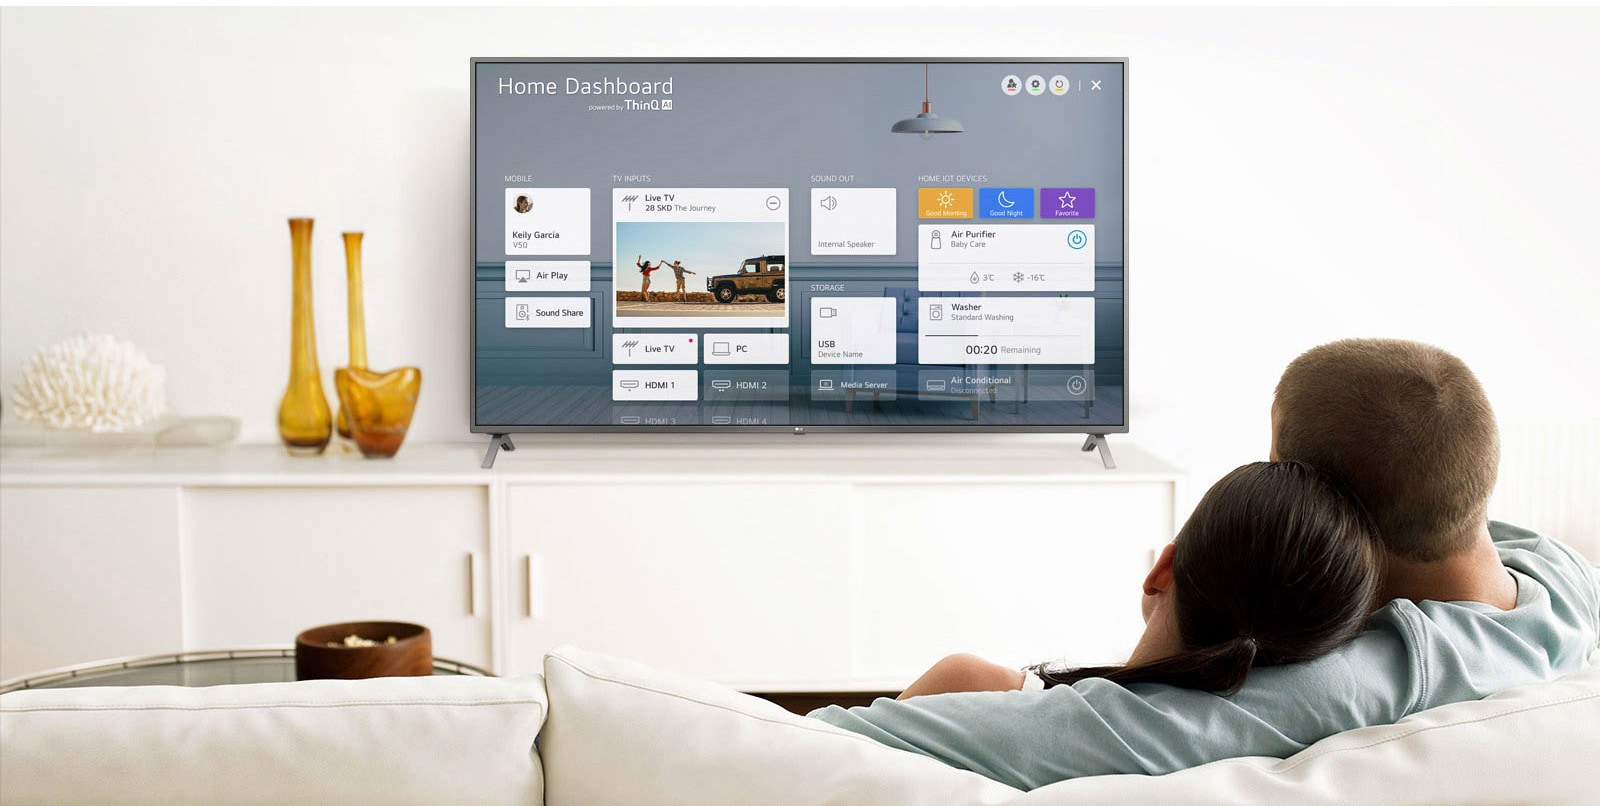 Un bărbat și o femeie care stau pe o canapea în camera de zi, cu Home Dashboard pe ecranul TV.